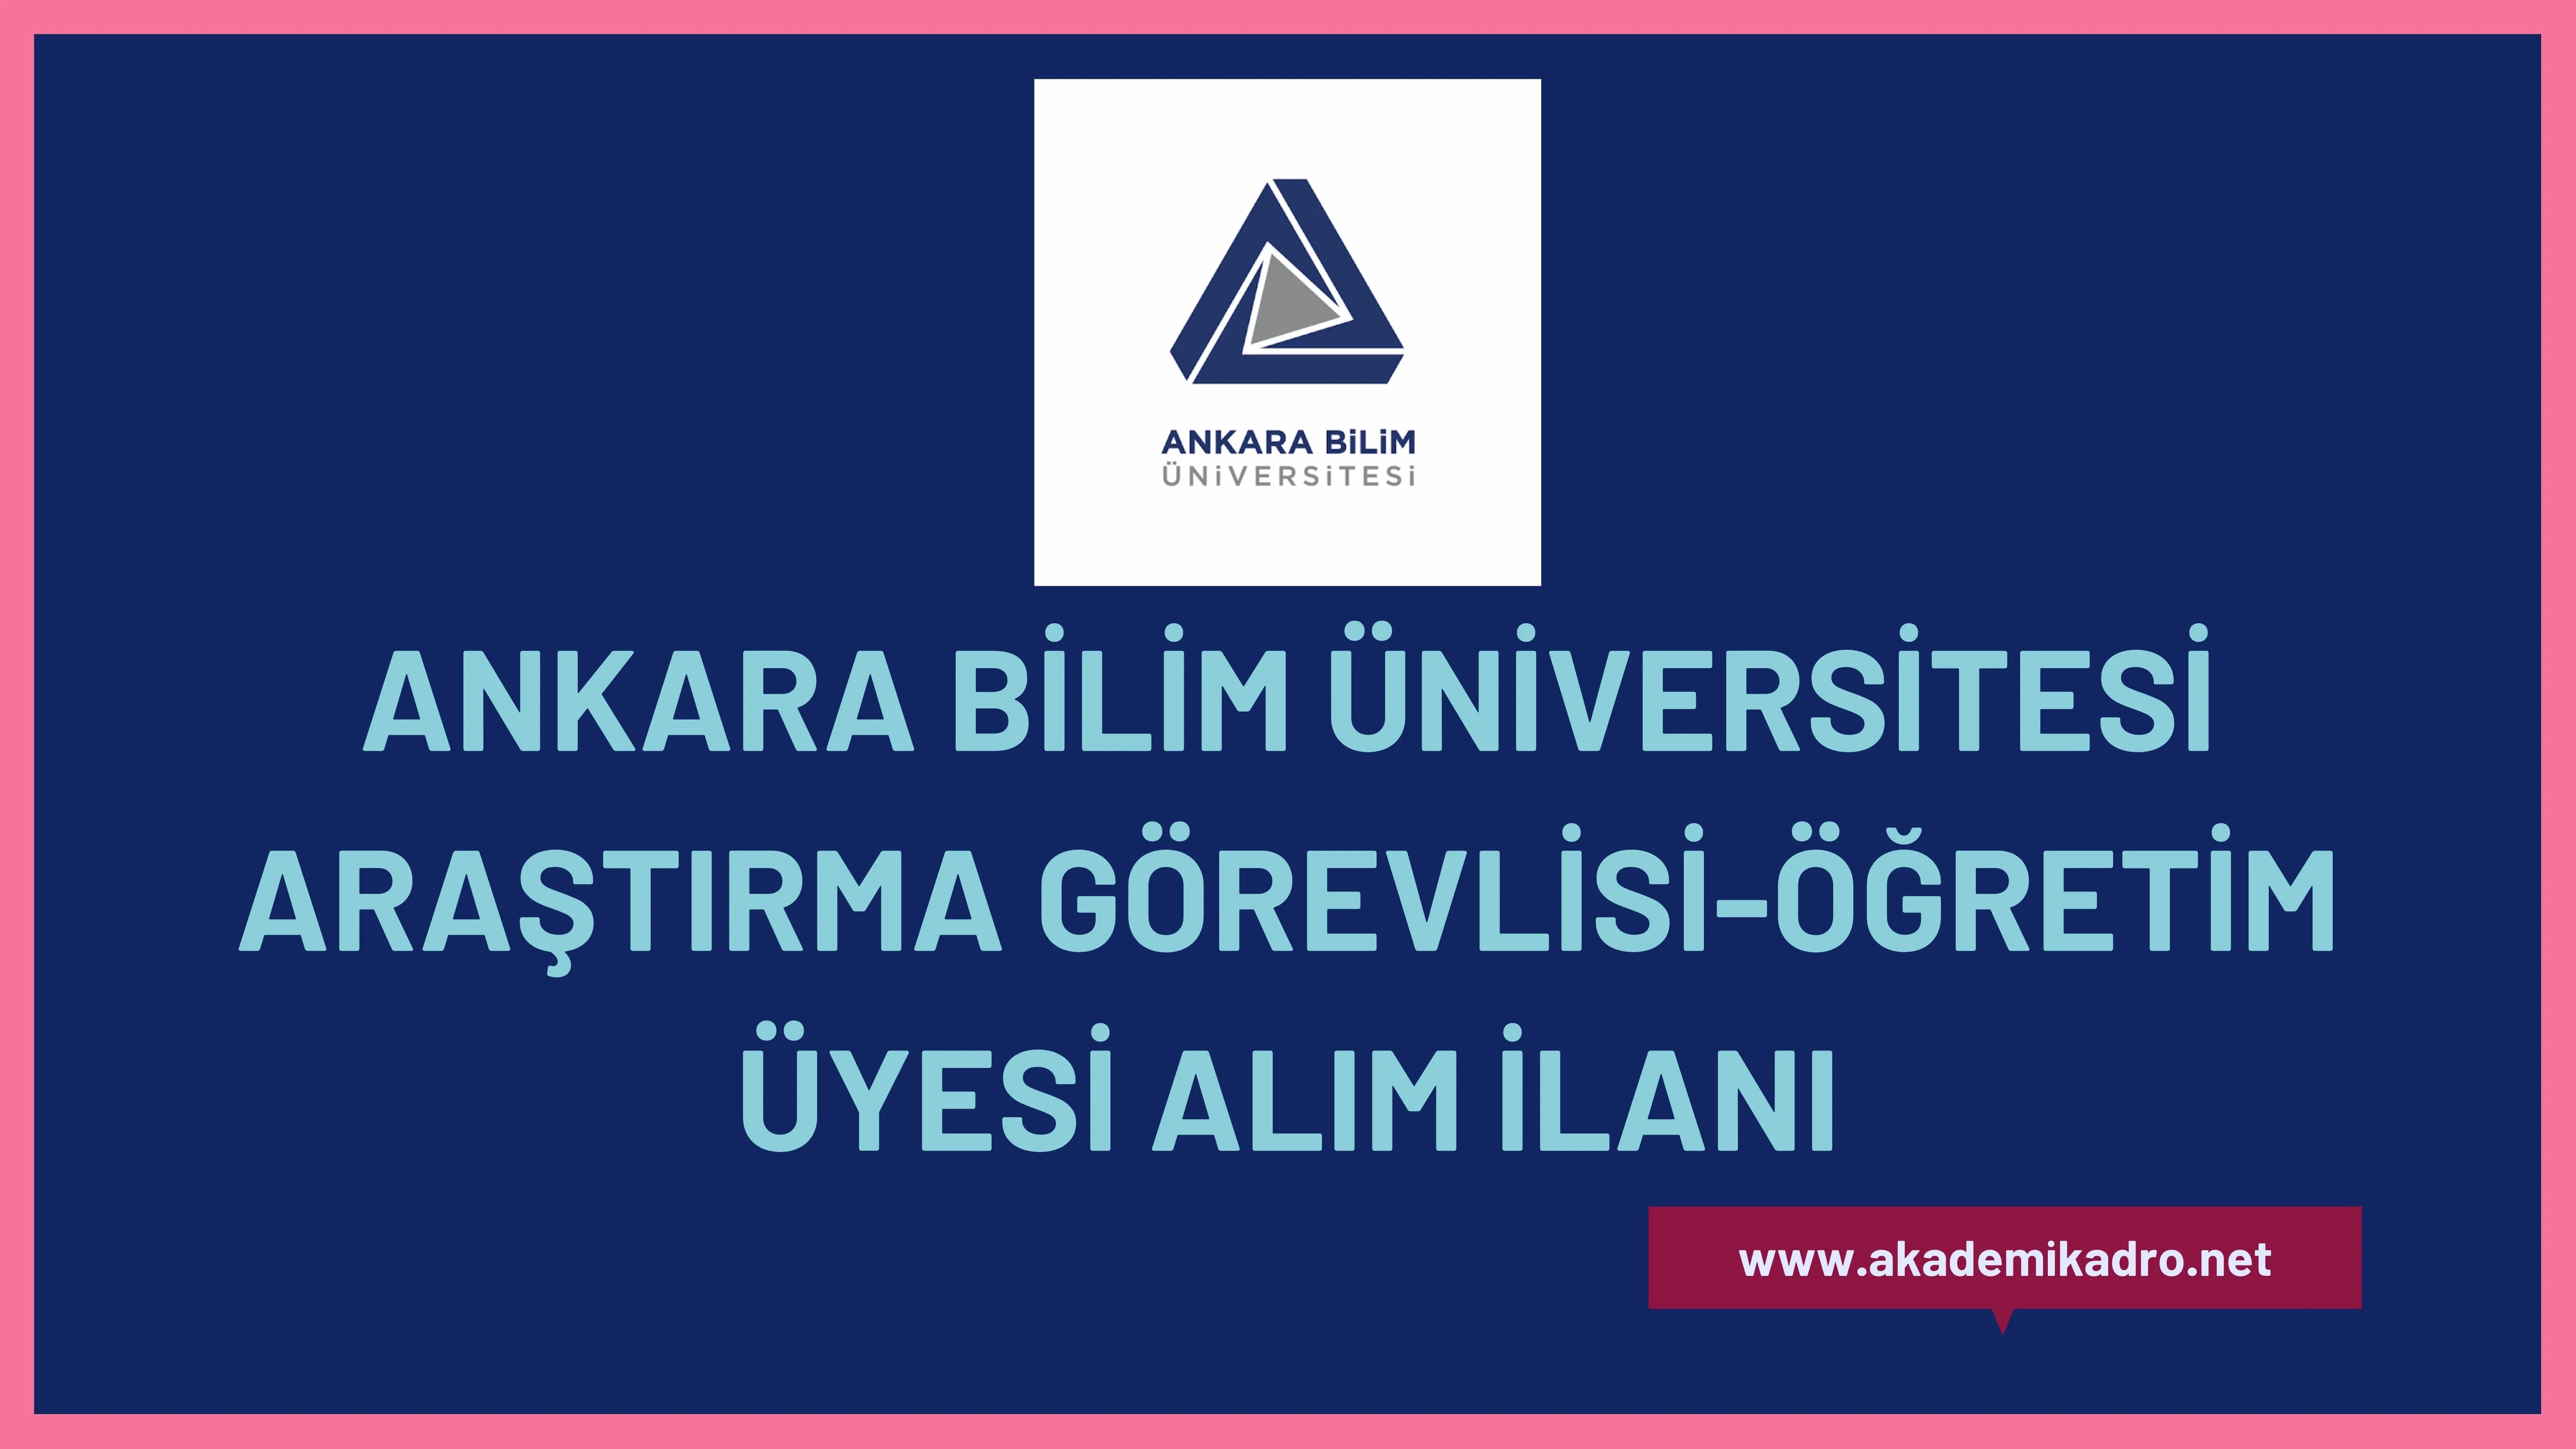 Ankara Bilim Üniversitesi 3 Araştırma görevlisi, 8 Öğretim görevlisi ve 5 Öğretim üyesi alacak.